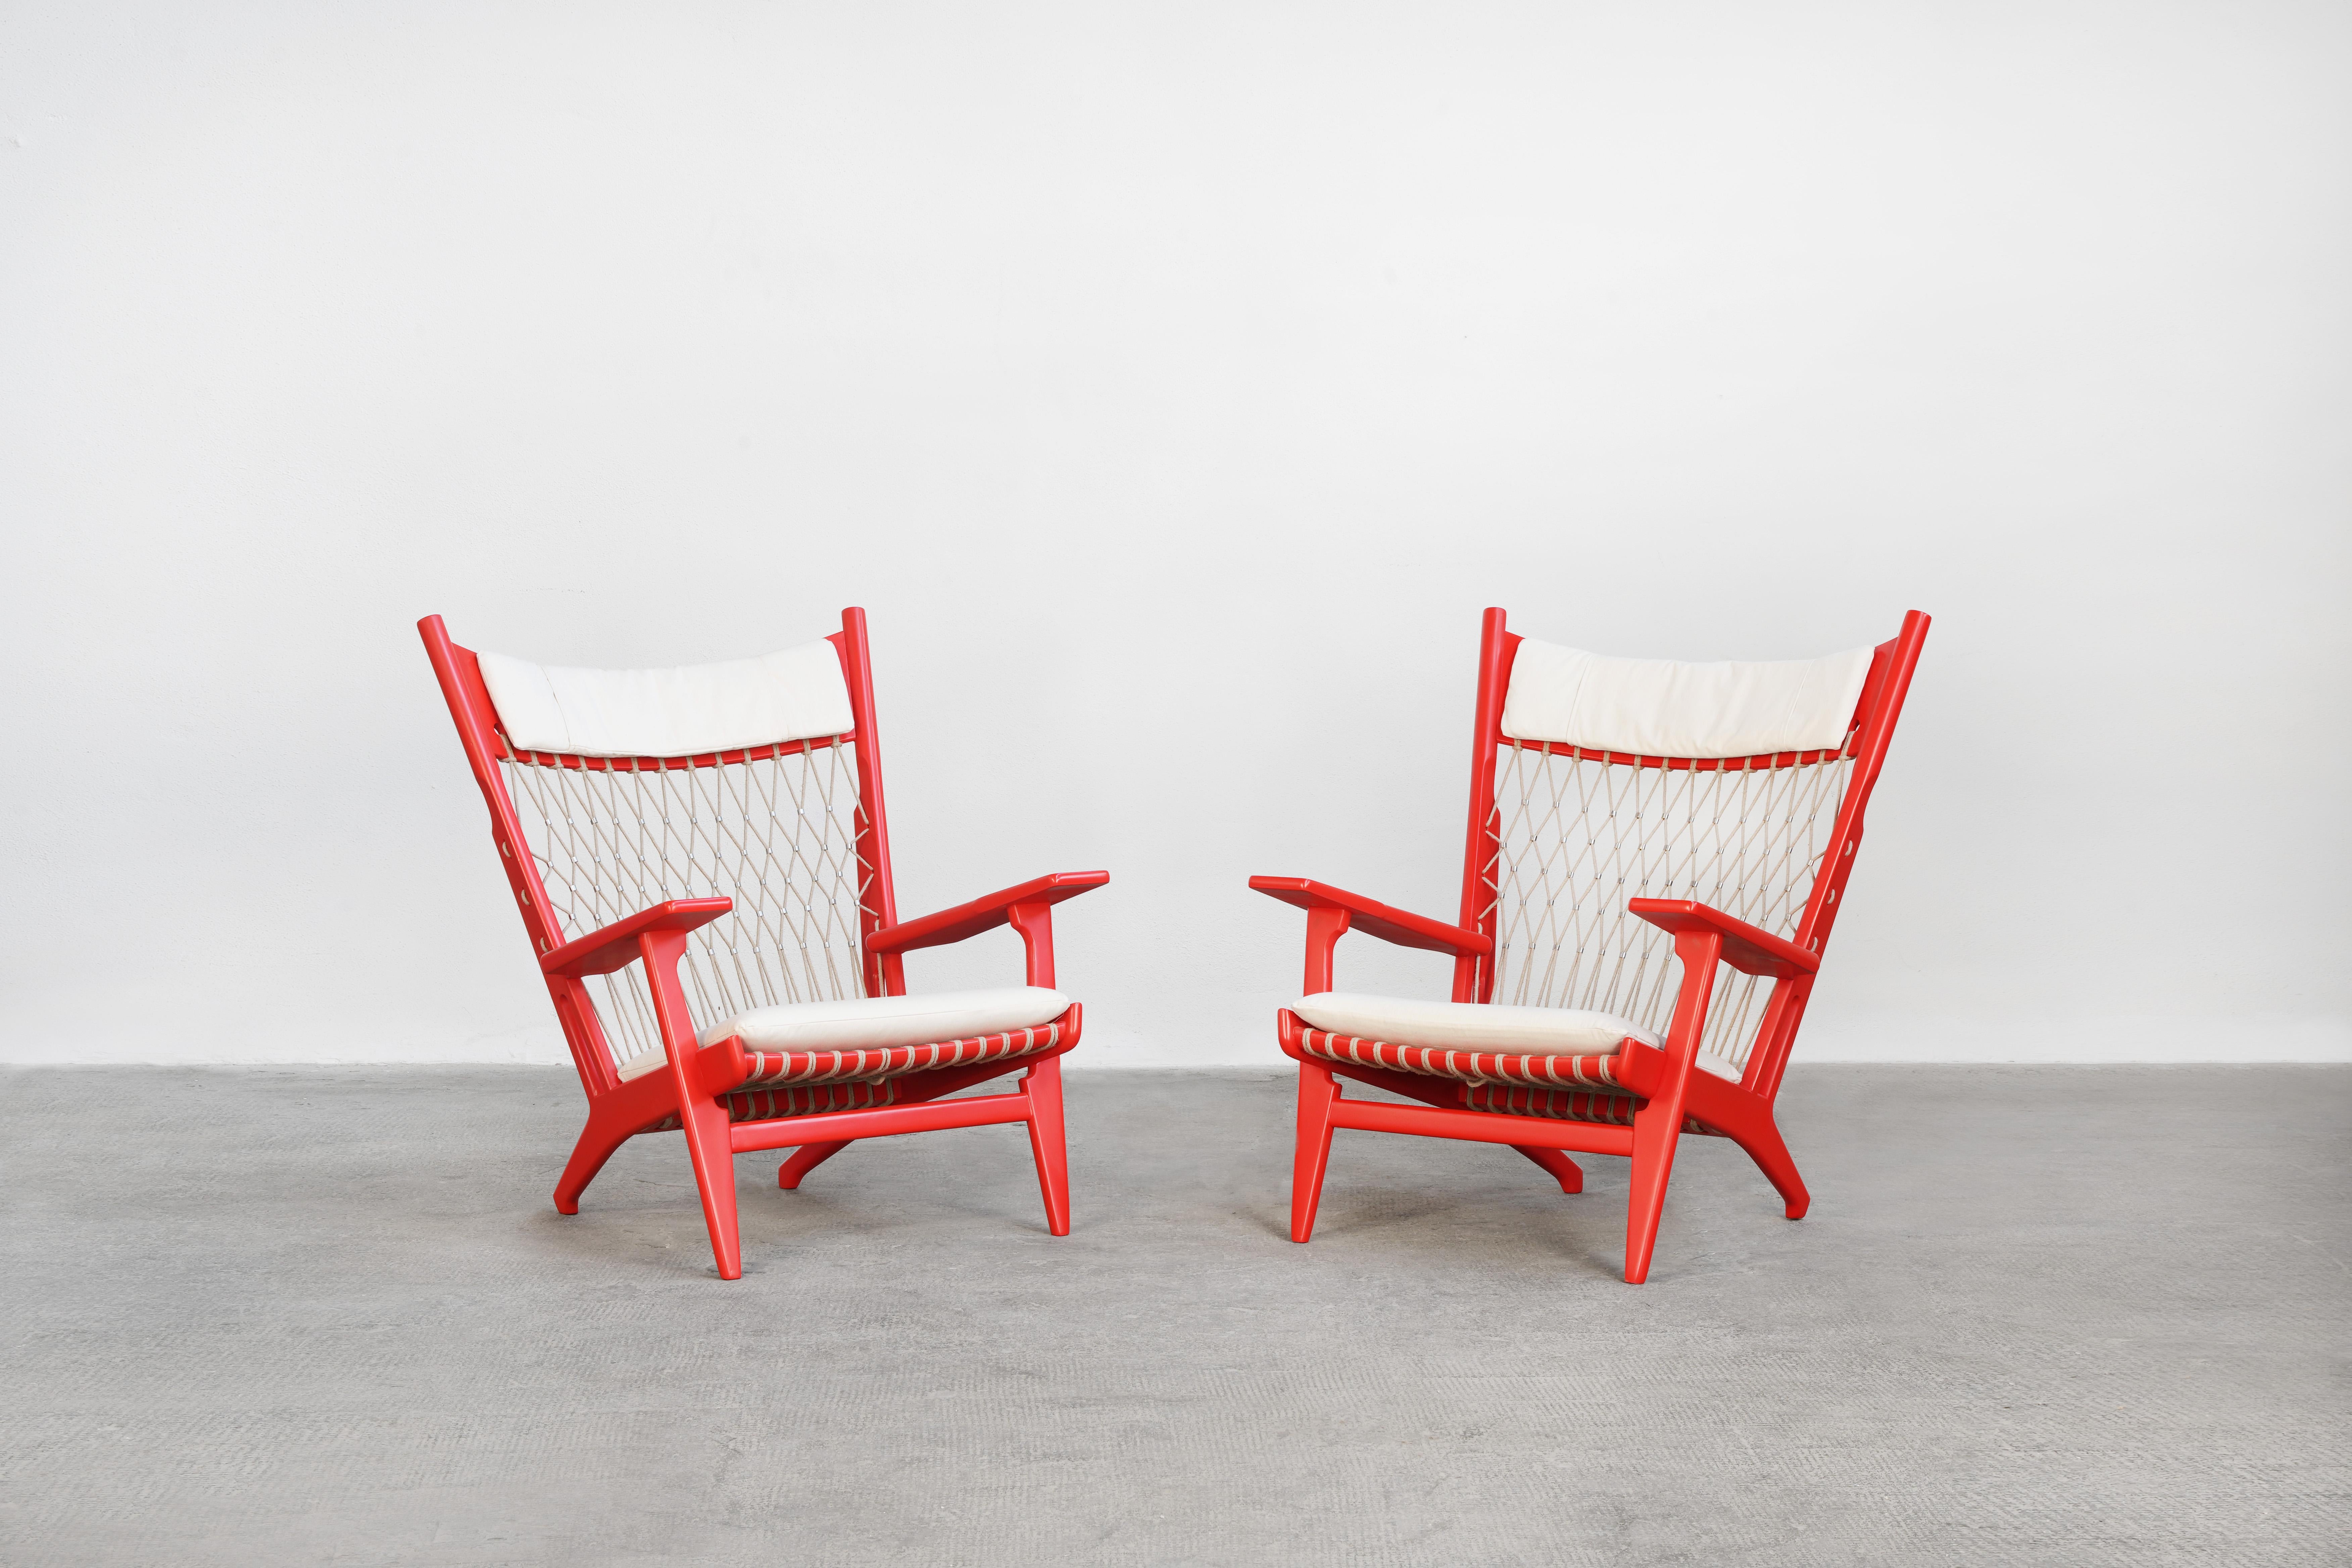 Magnifique paire de fauteuils danois conçus par Hans J. Wegner et fabriqués par Johannes Hansen. 
Ces rares chaises de salon sont en excellent état de restauration, avec des coussins d'assise et de nuque détachés, recouverts d'un tissu de haute